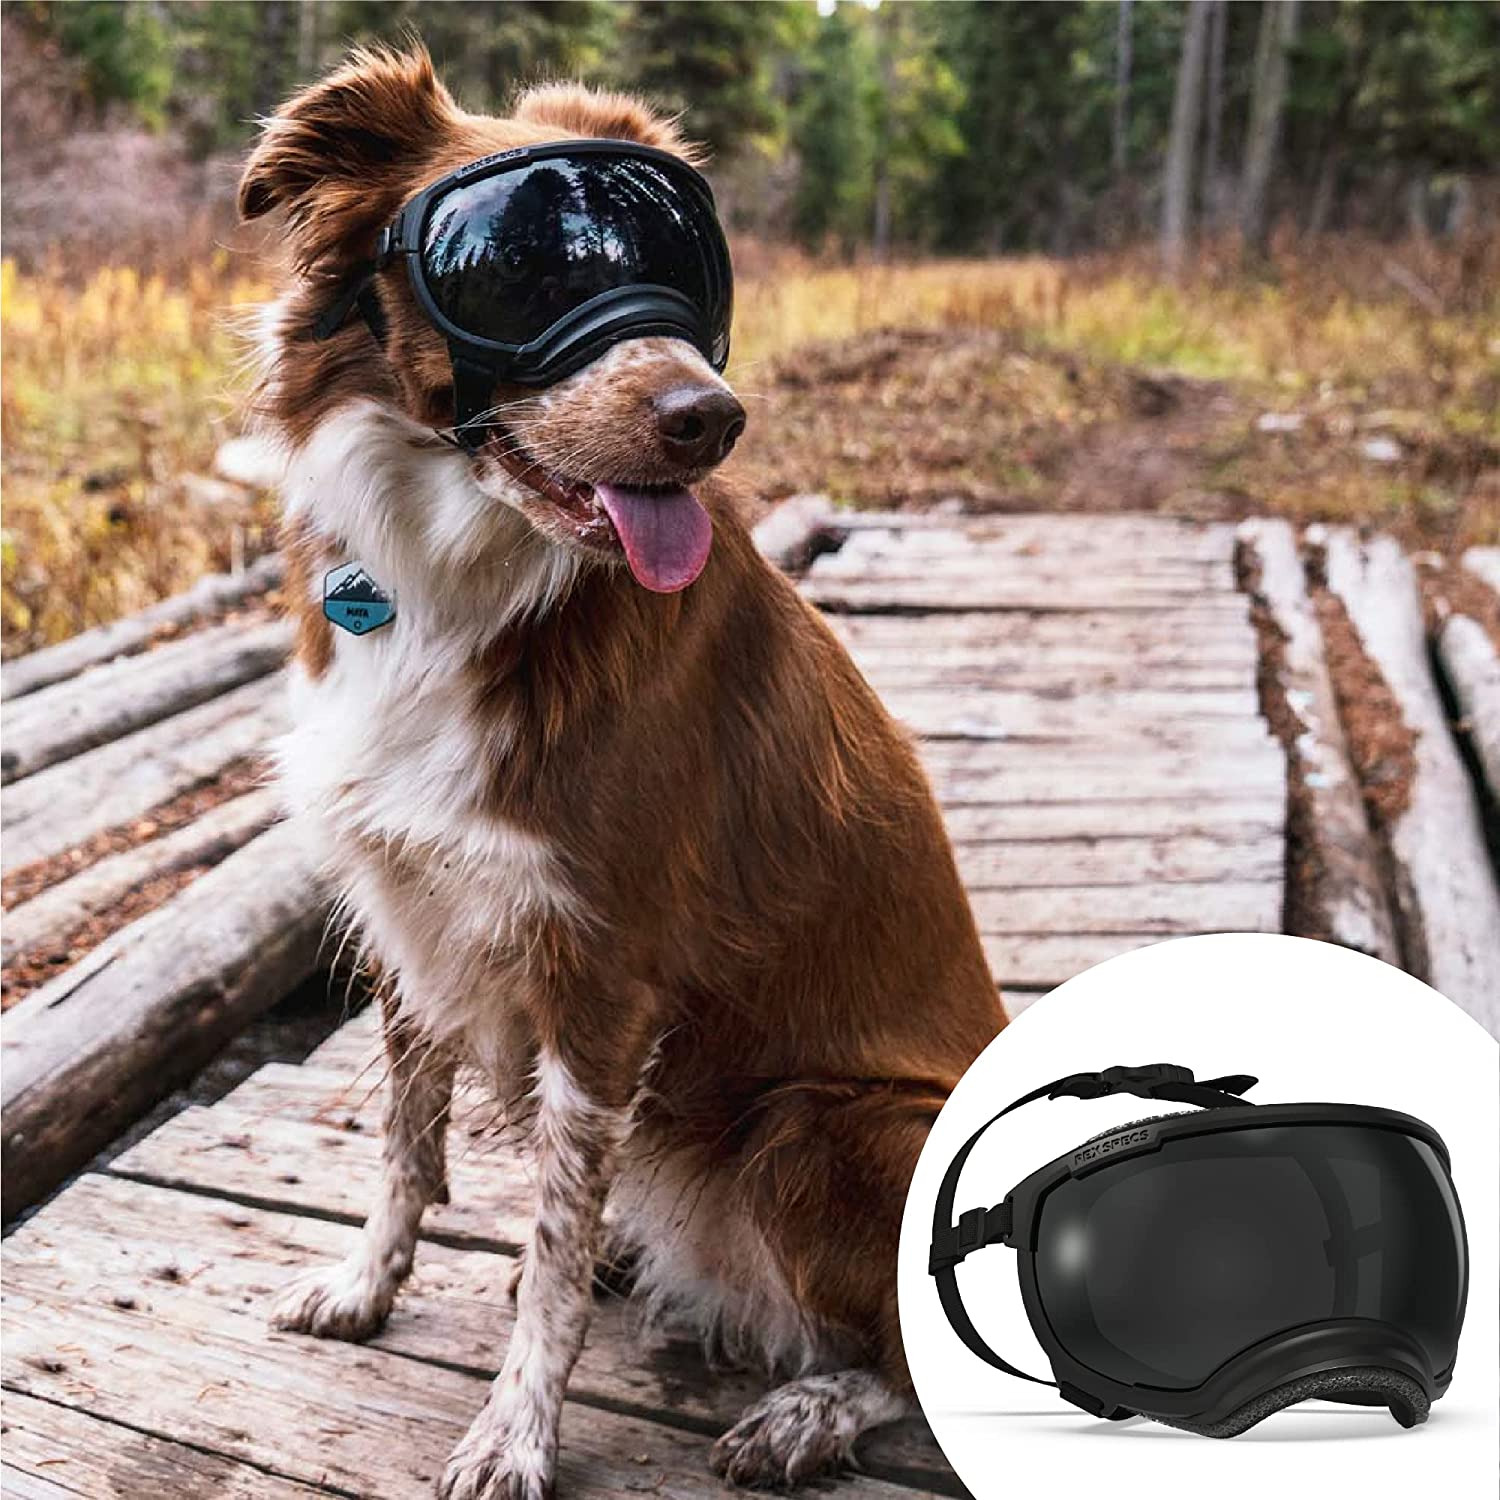 V2 Dog Goggles (X-Large, Black)